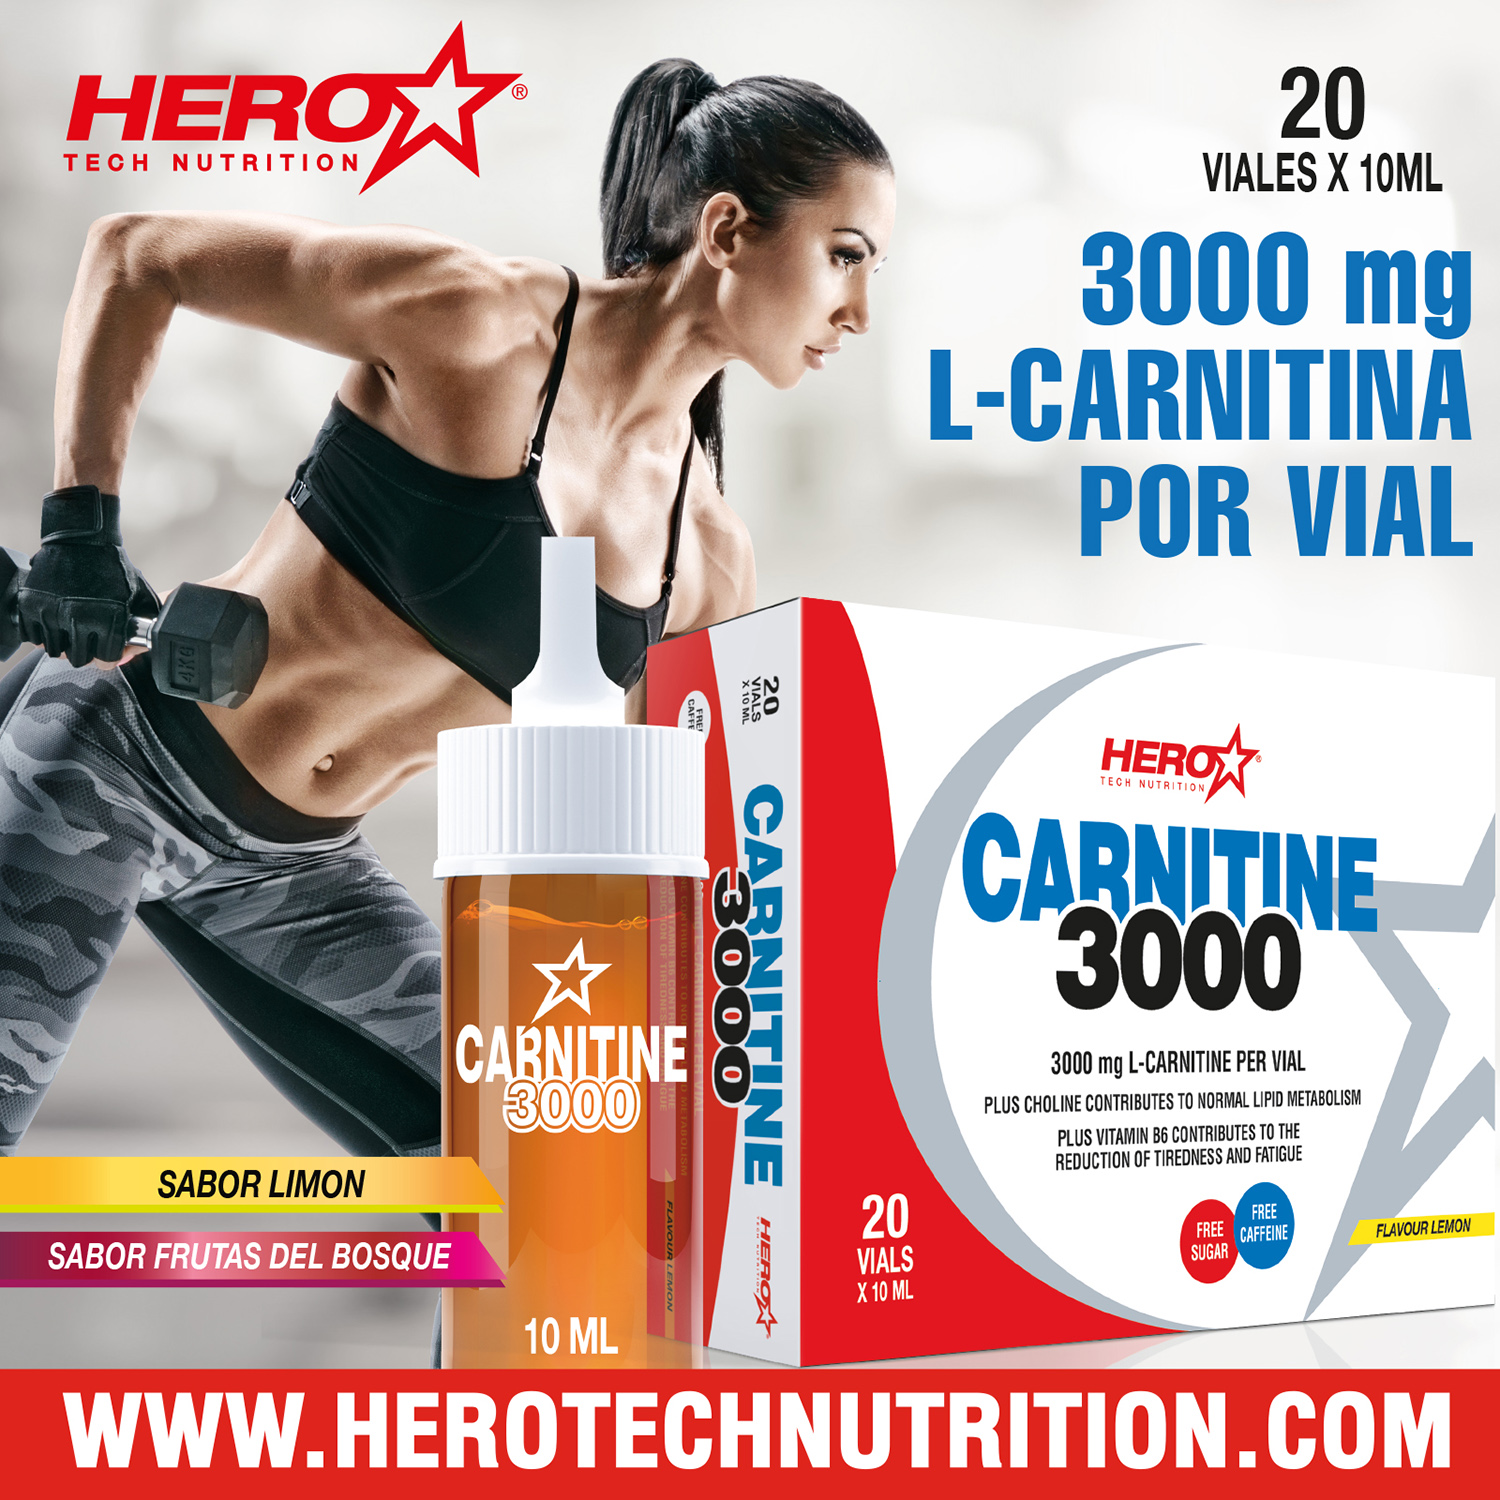 CARNITINA CONTROL PESO HERO TECH NUTRITION herotechnutrition